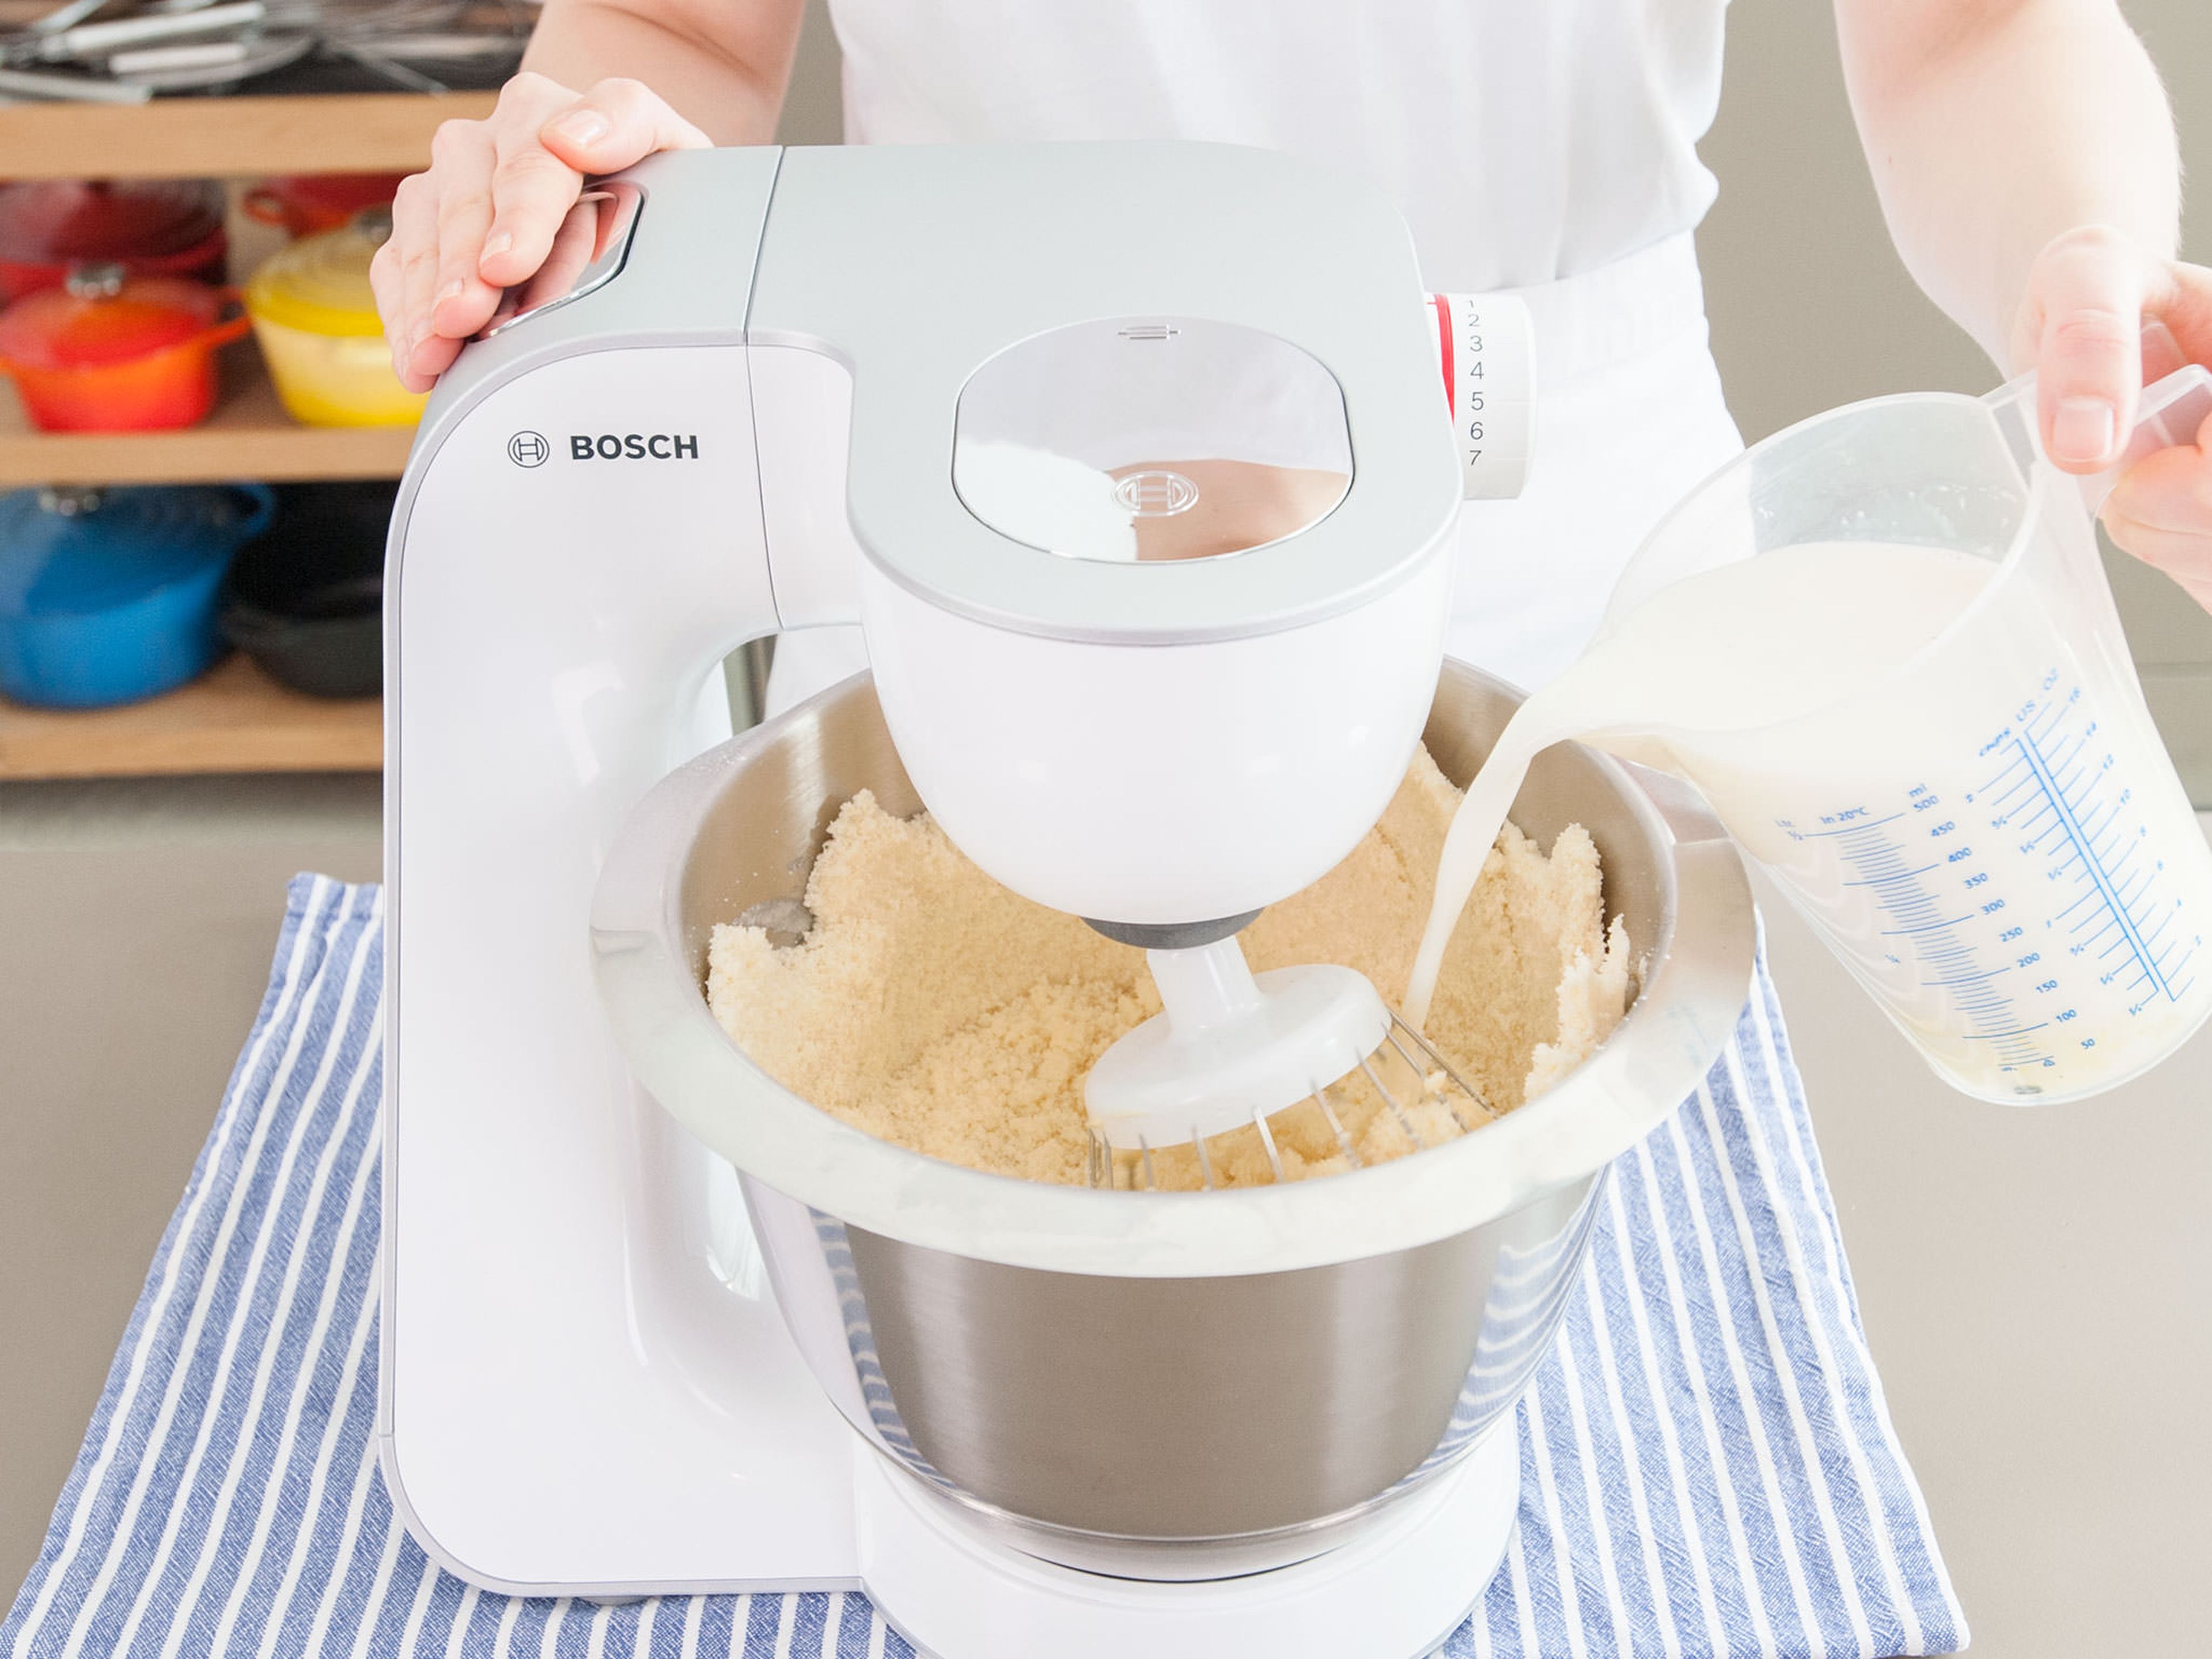 Mehl, Zucker, Backpulver und Salz auf niedriger Geschwindigkeitsstufe in der Küchenmaschine vermischen und nach und nach einen Teil der weichen Butter hinzufügen bis eine krümelige Masse entstanden ist. Die Hälfte der Milch-Ei-Mischung hinzugeben und bei mittlerer Geschwindigkeit für ca. 2 Min. verrühren. Übrige Milch-Ei-Mischung dazugeben und für eine weitere Minute verrühren. Überschüssigen Teig von den Rändern der Schüssel kratzen. Anschließend ca. 30 Sek. zu einer cremigen Masse schlagen.